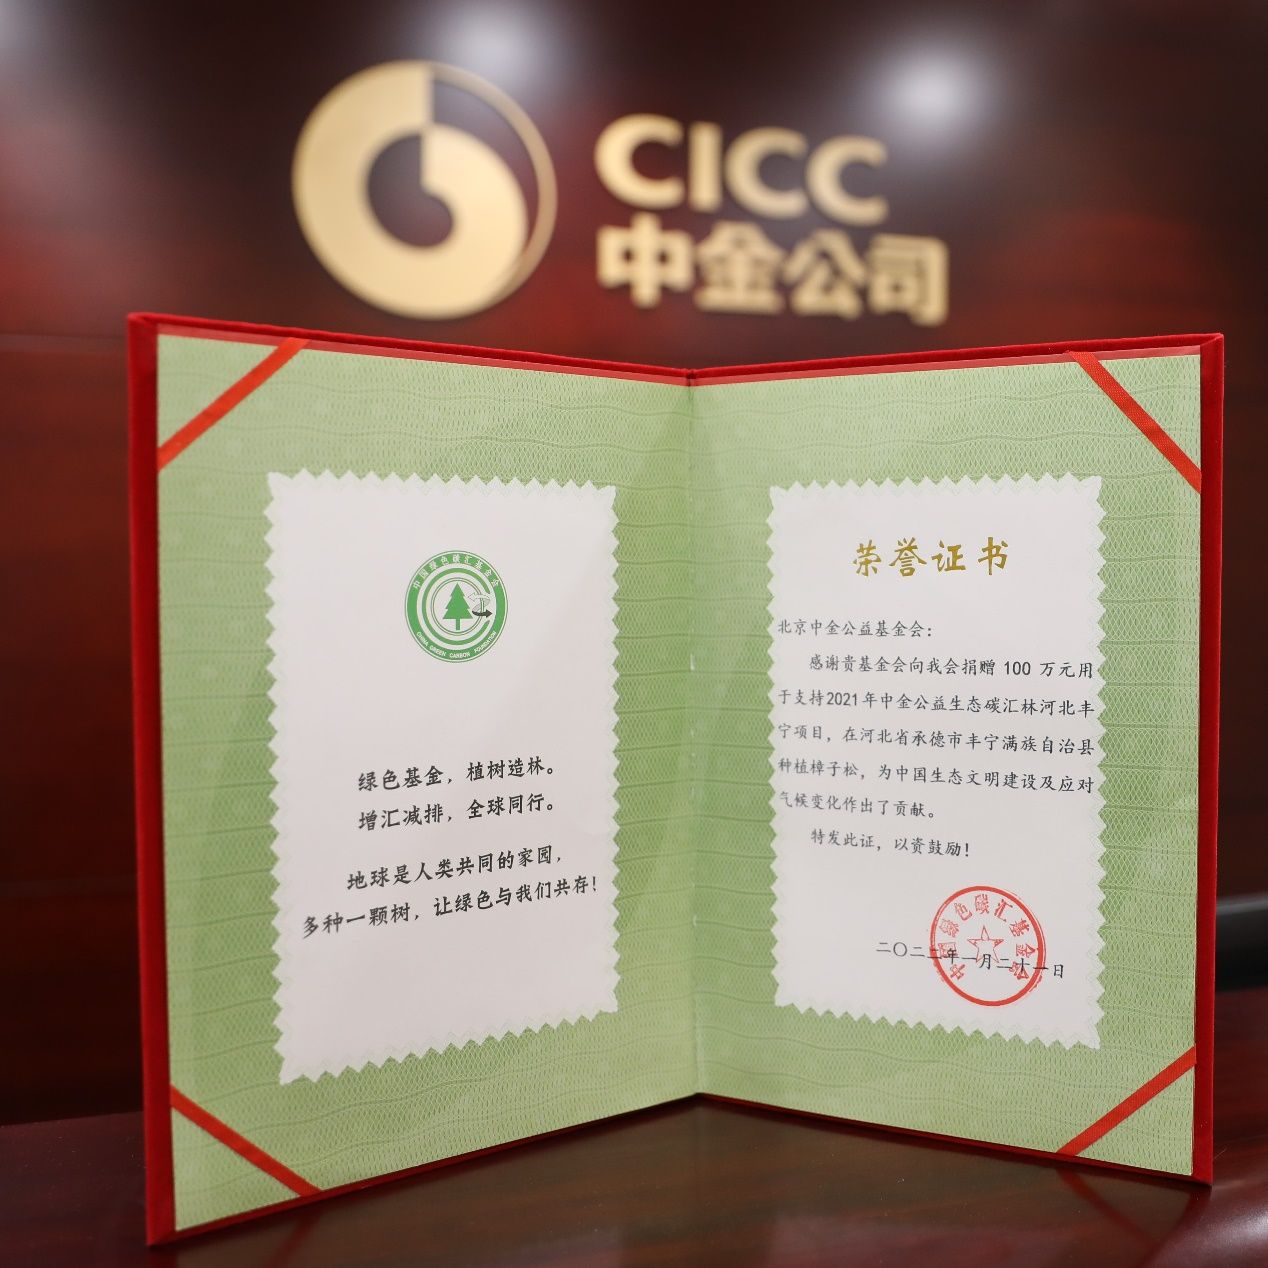 中国绿色碳汇基金会与北京中金公益基金会签署战略合作备忘录